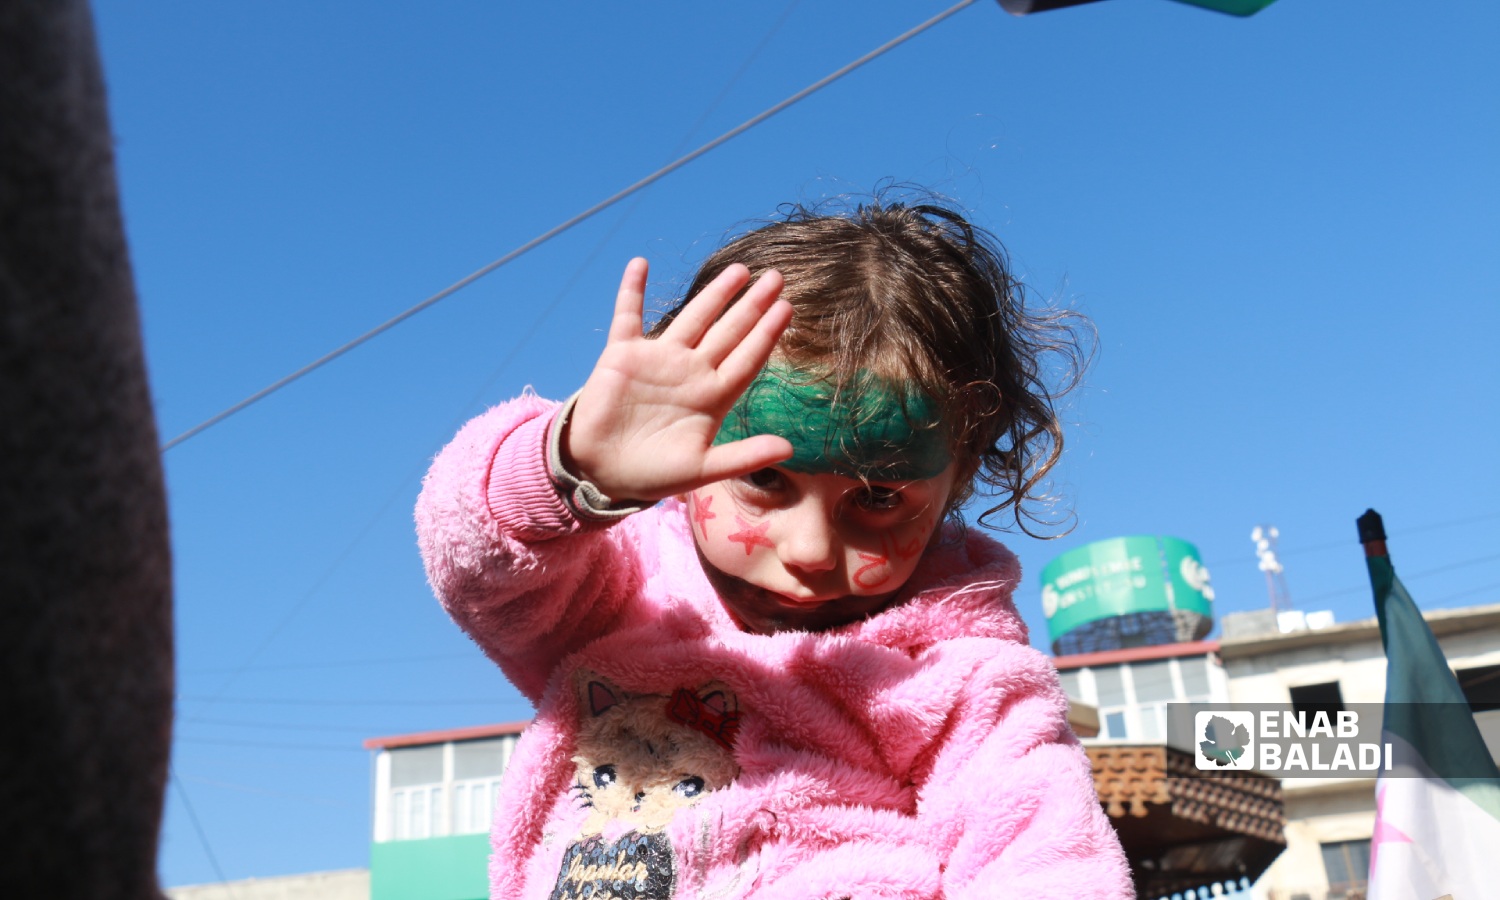 طفلة خلال مظاهرة في مدينة اعزاز بريف حلب الشمالي تنديدًا بالتصريحات التركية حول التقارب مع النظام السوري وتأكيدًا على استمرار الثورة السورية- 30 من كانون الأول 2022 (عنب بلدي/ ديان جنباز)